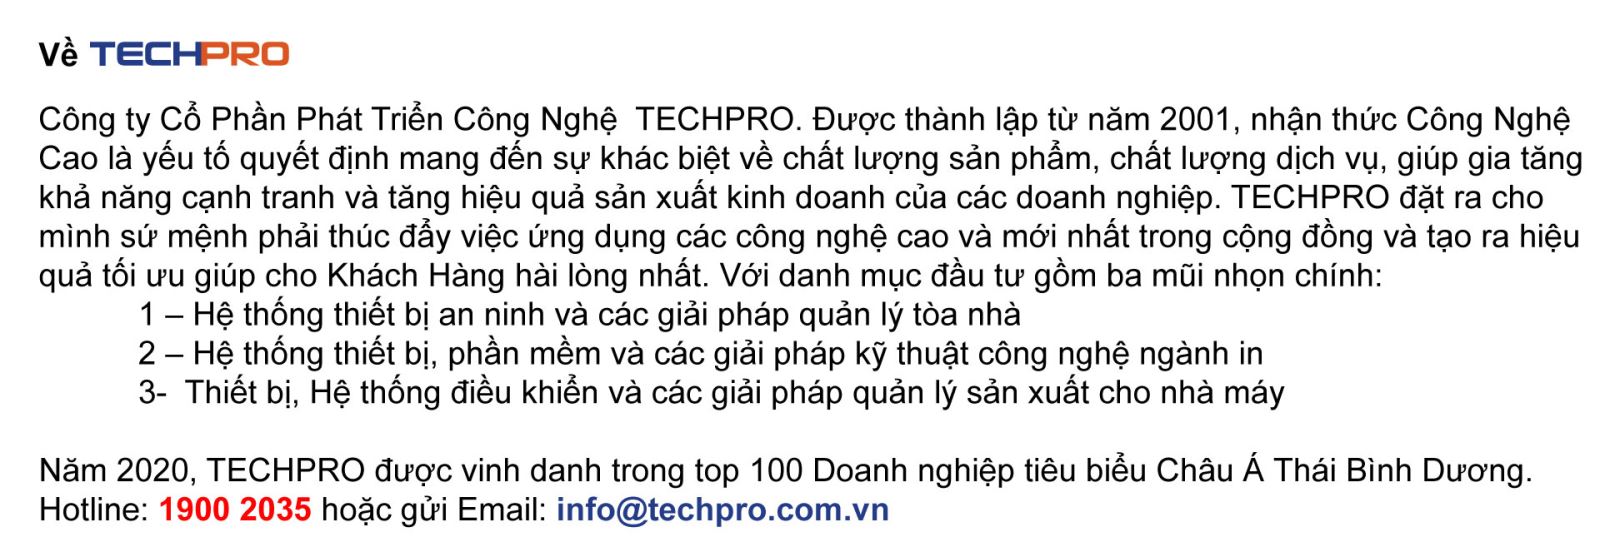 Thông tin giới thiệu về TECHPRO